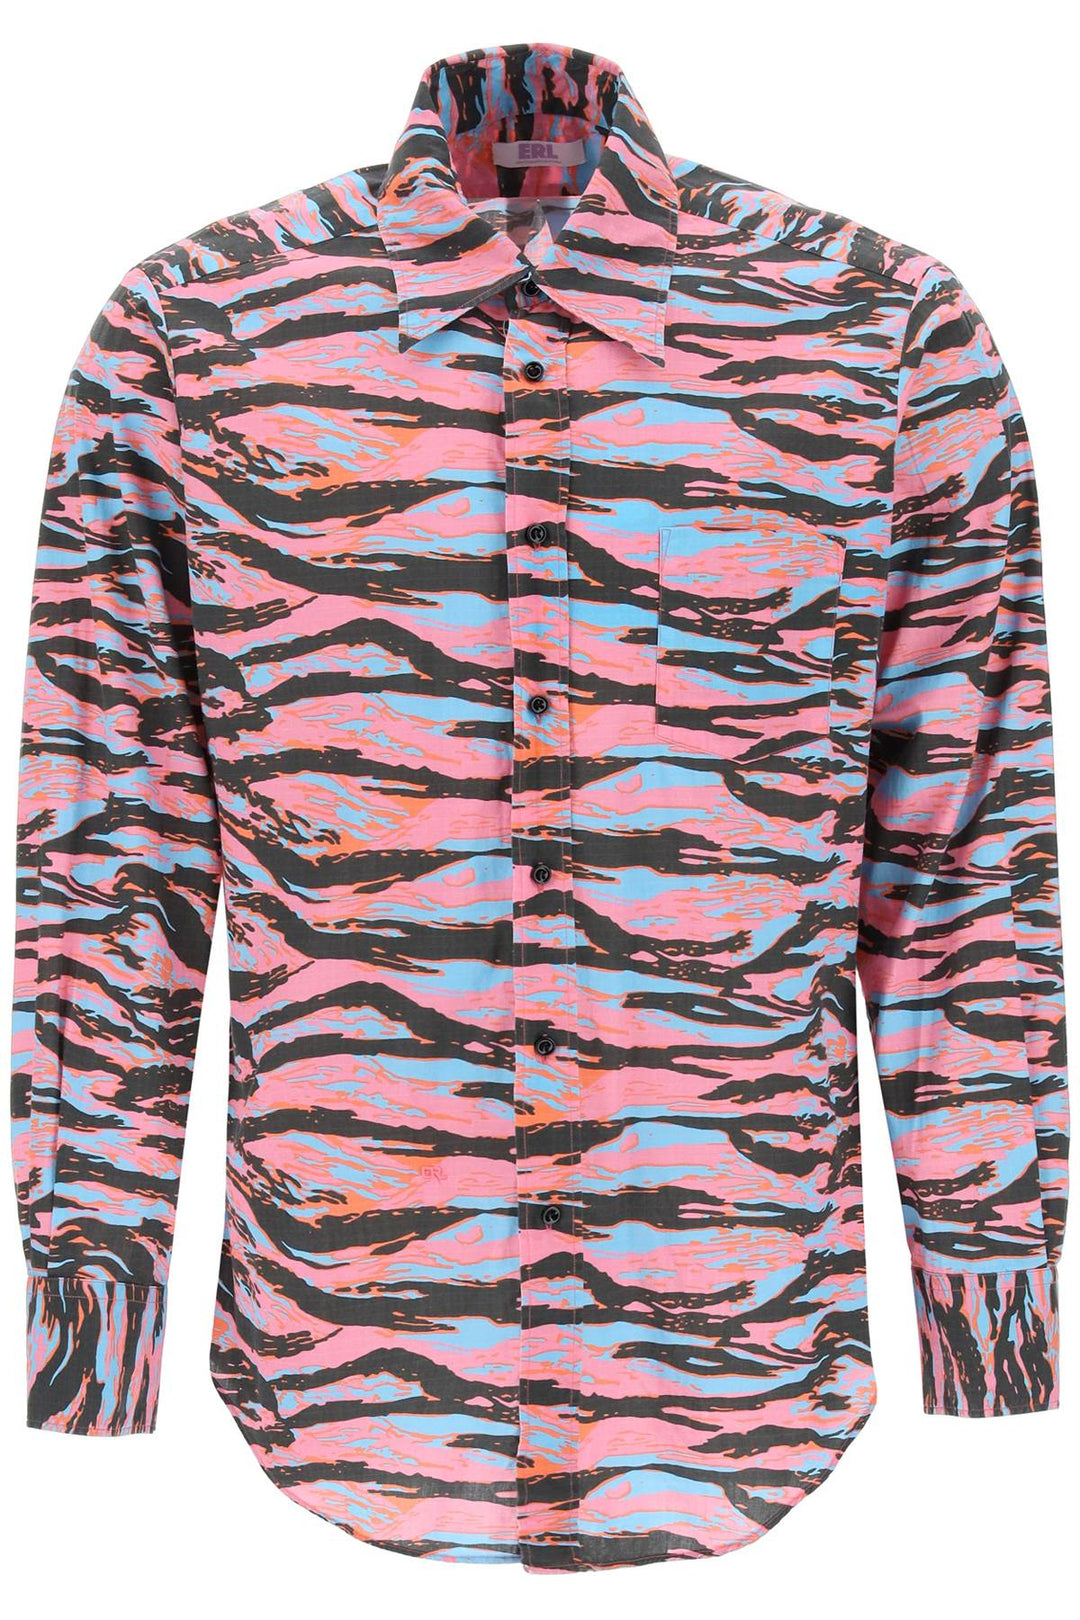 Camicia In Cotone Camouflage - Erl - Uomo